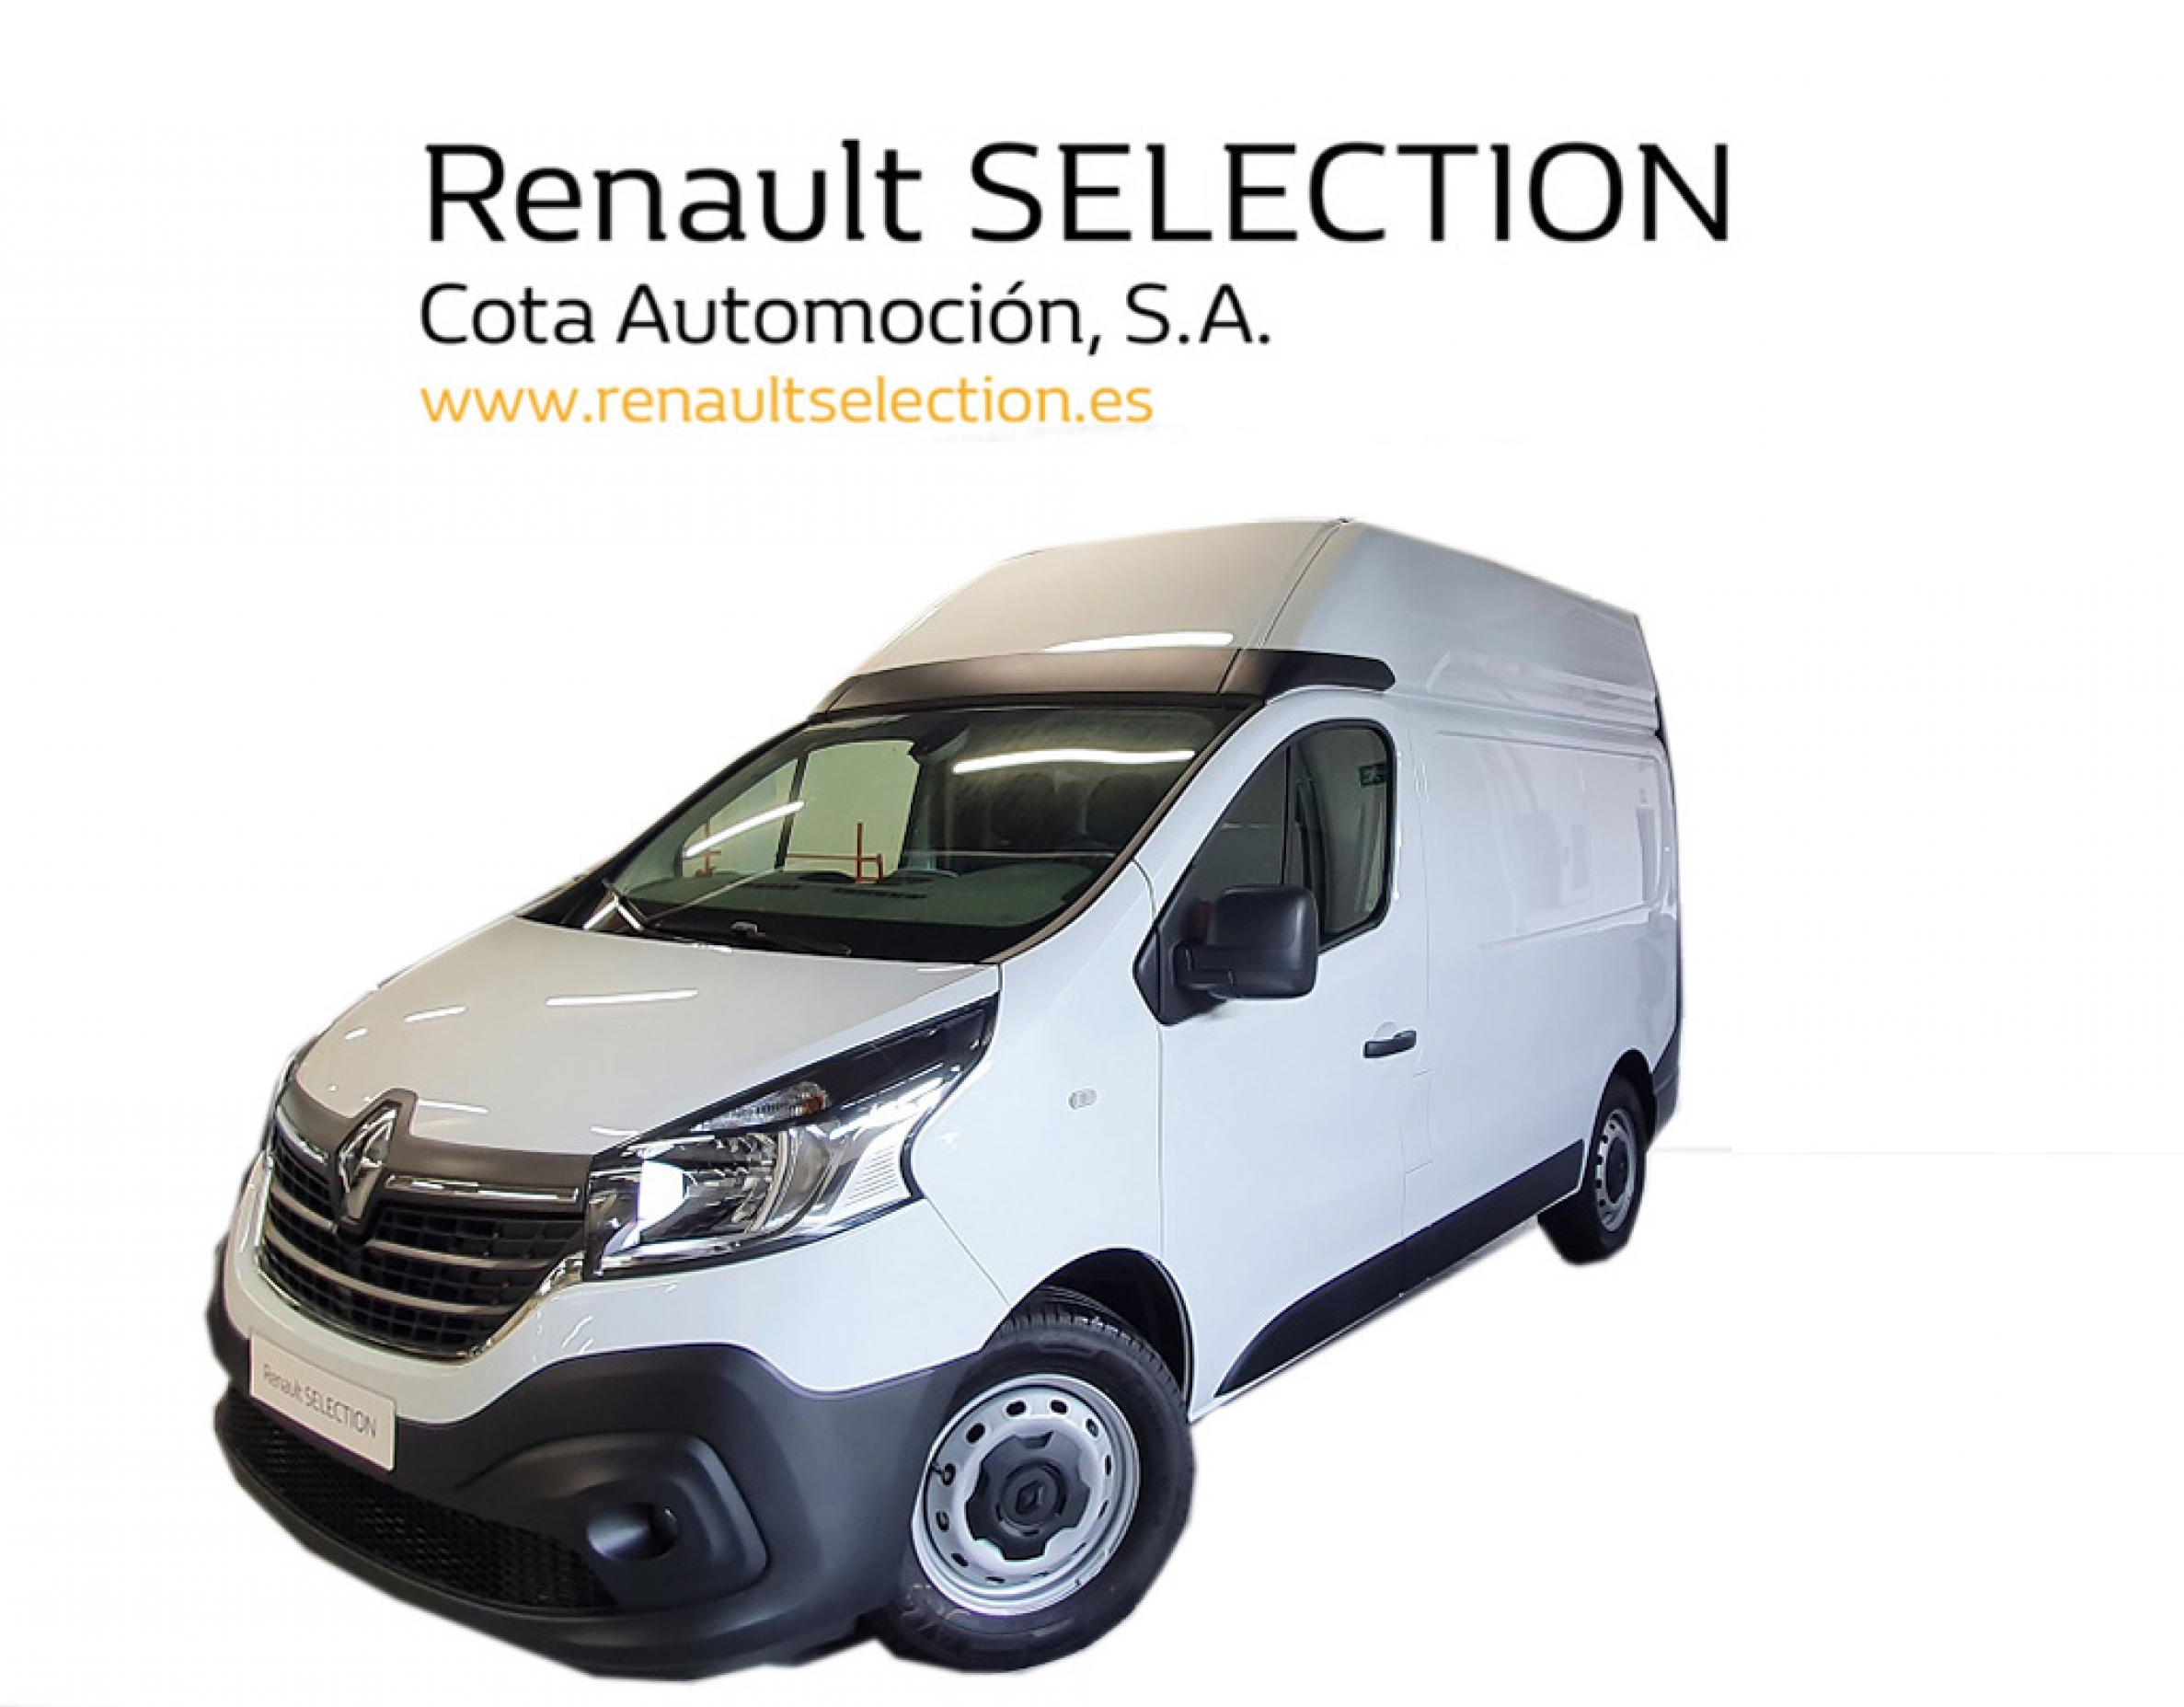 Renault Trafic 31.100€ - Segunda mano y ocasión